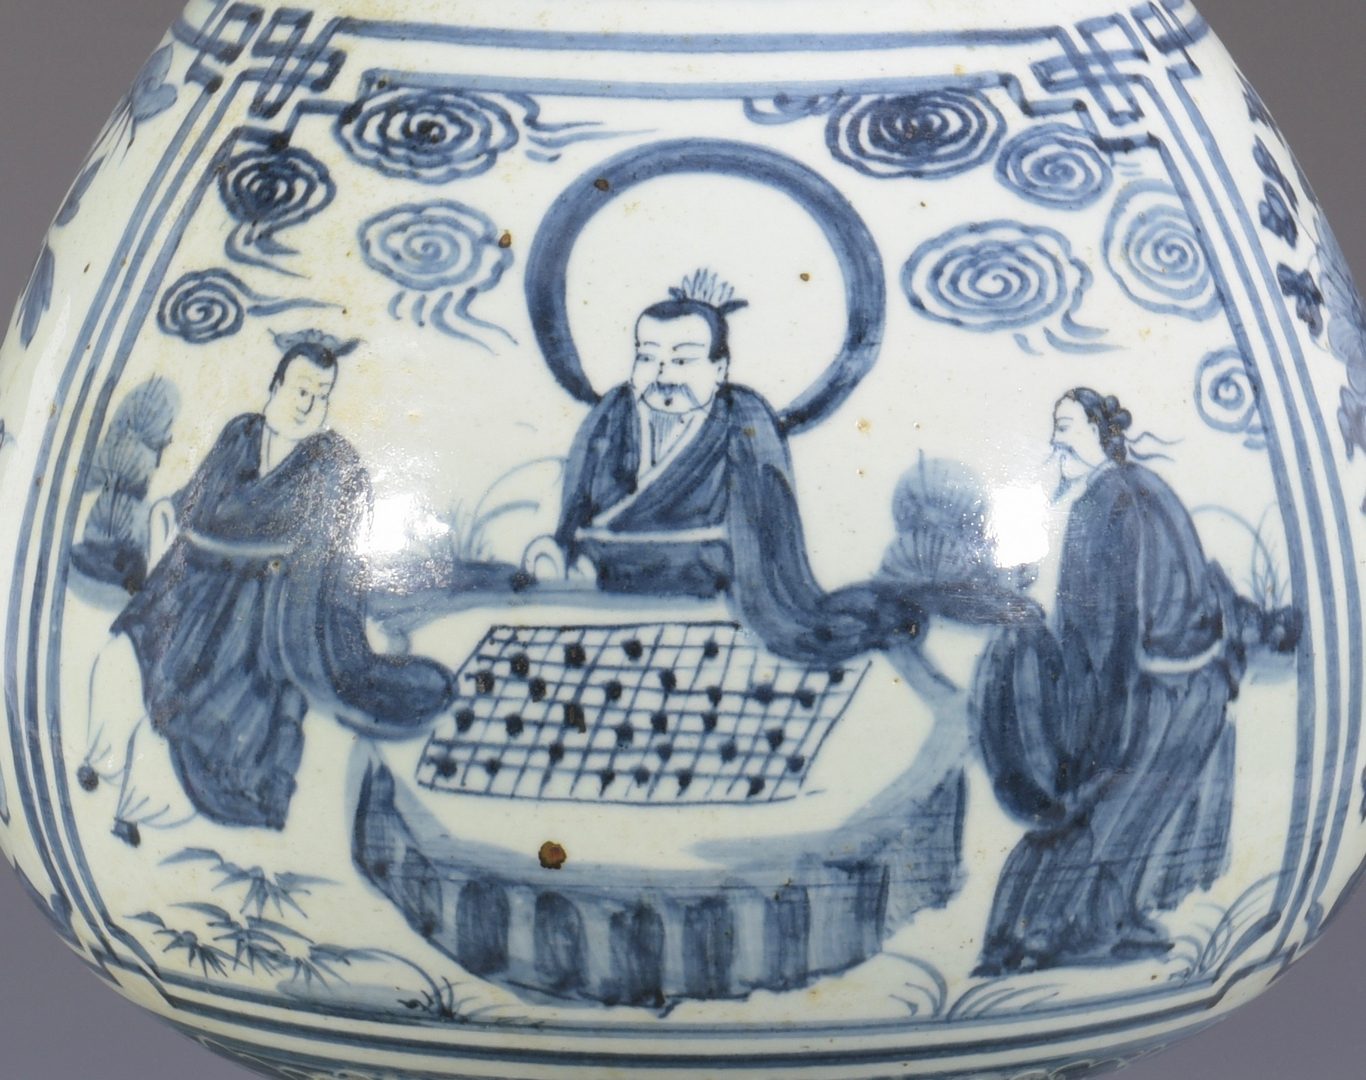 Lot 345: Chinese Blue & White Floor Vase